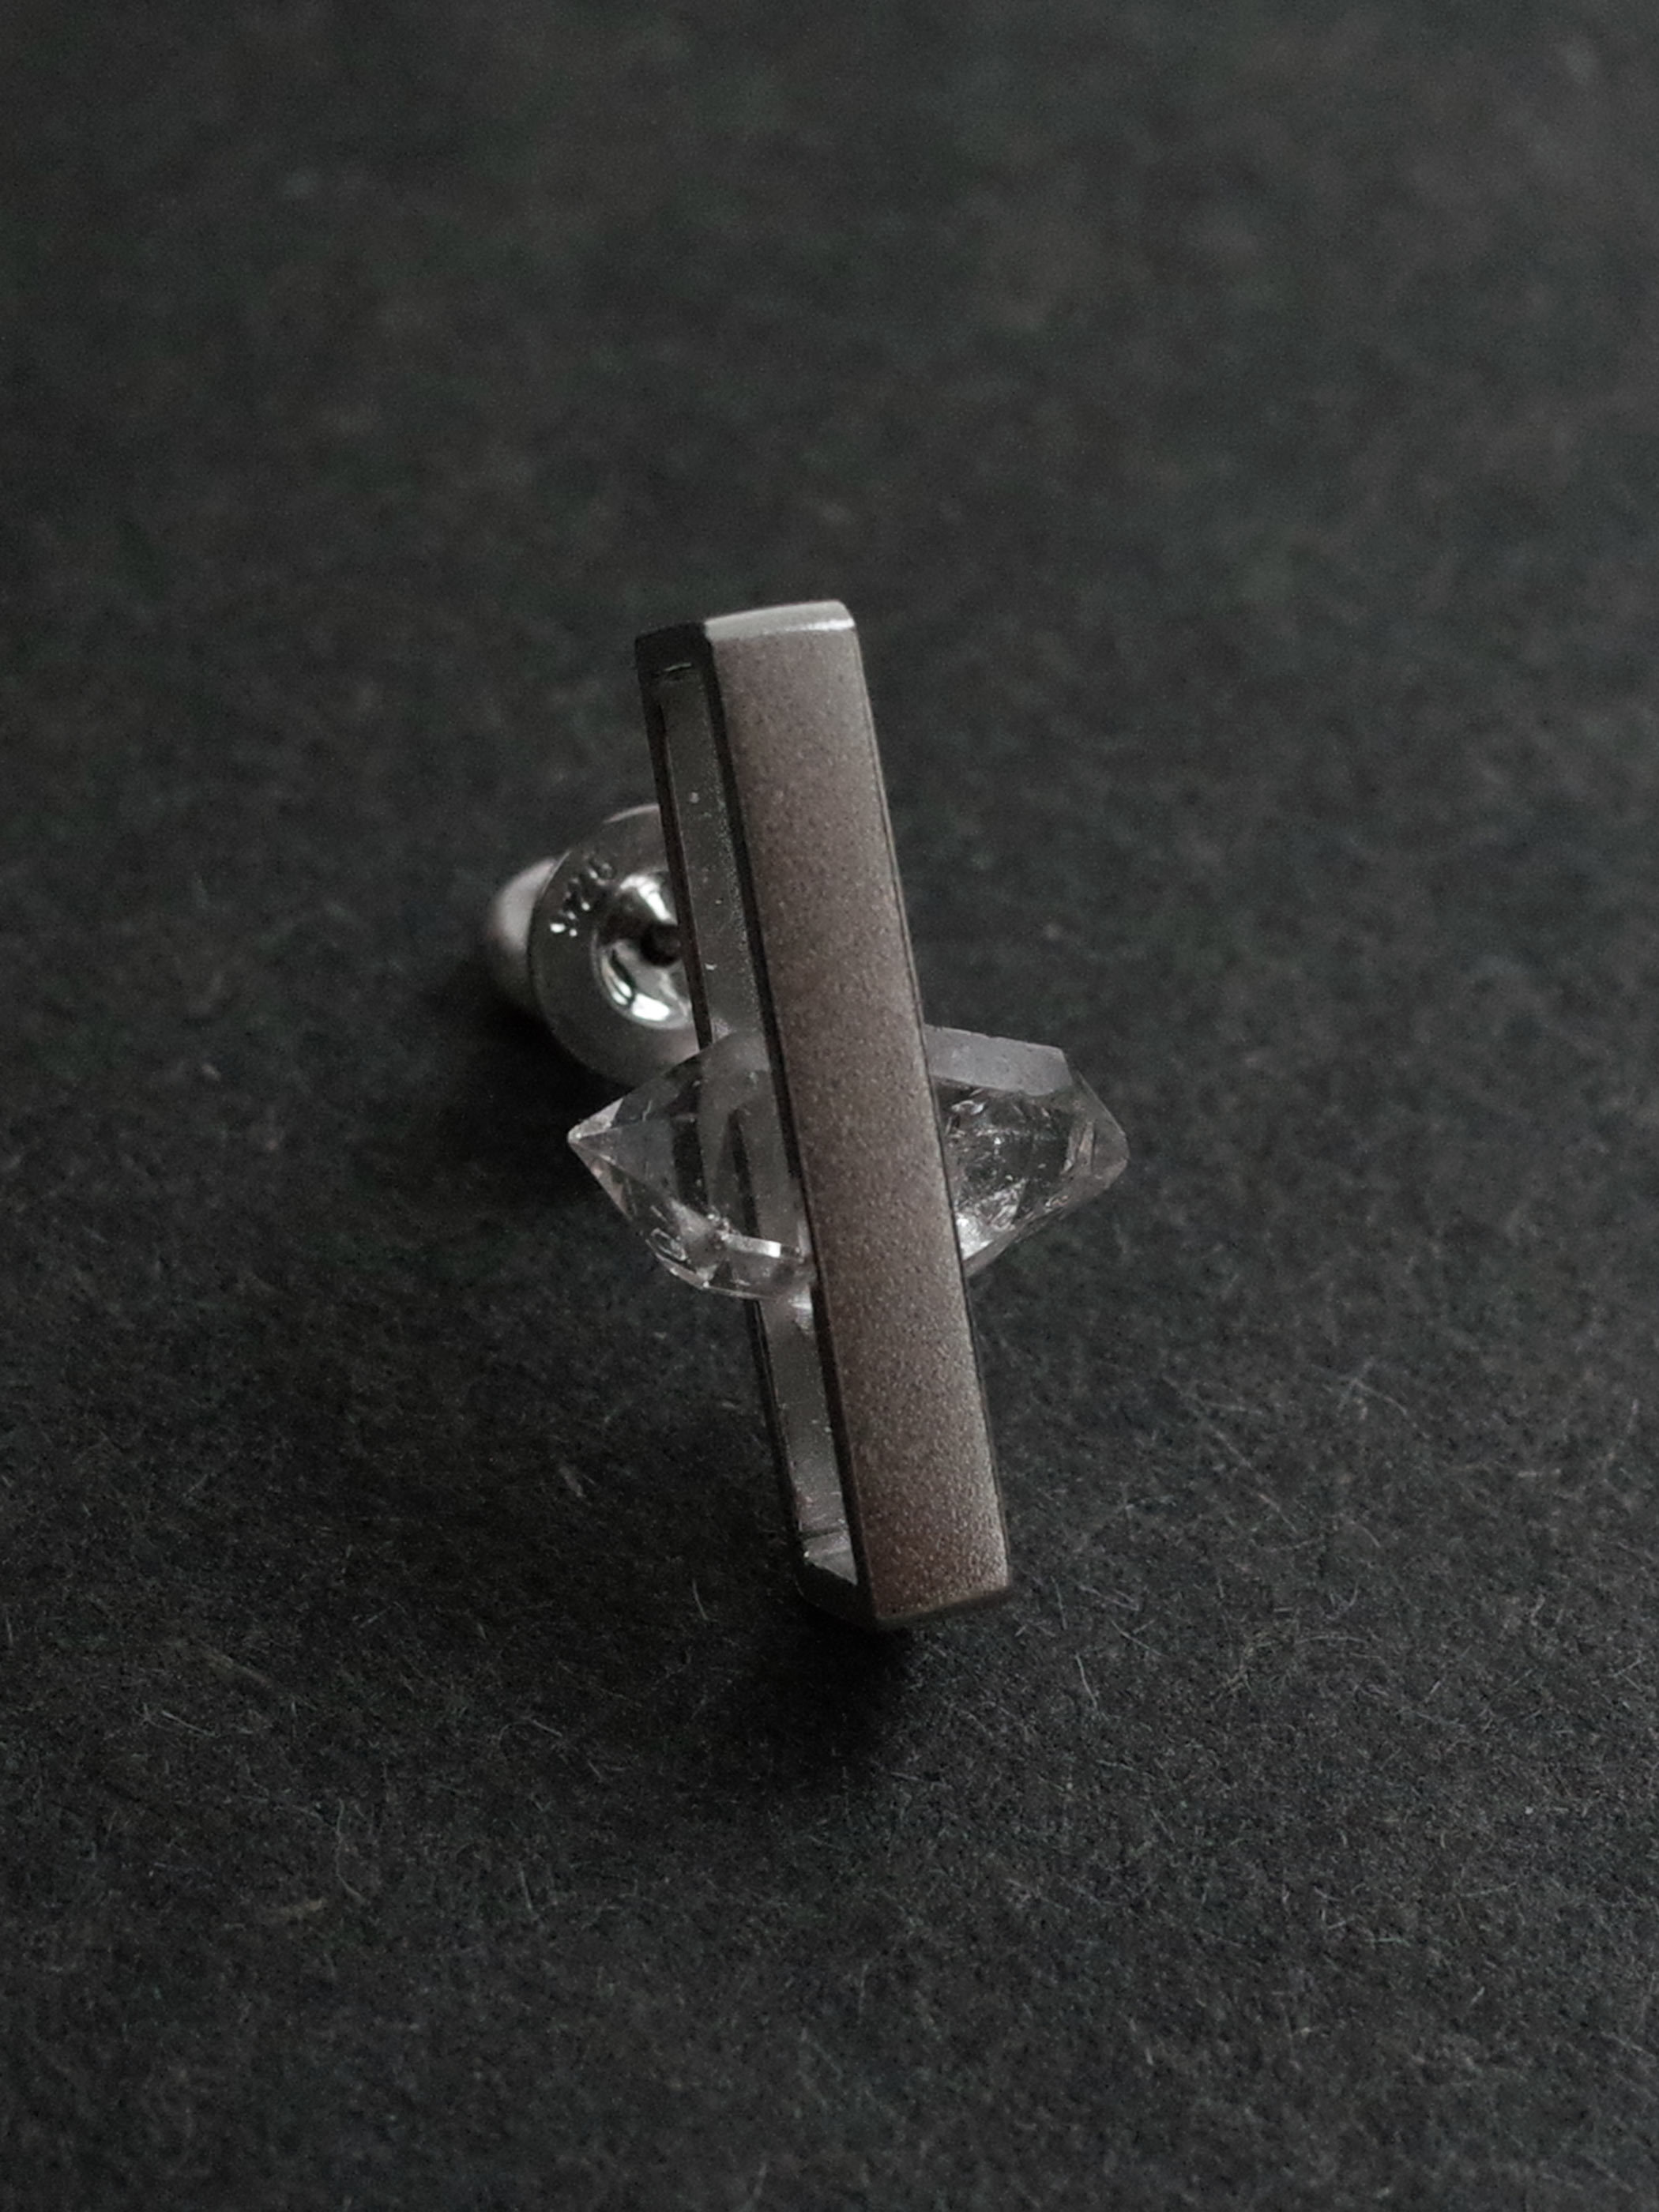 〈INSIDE〉quartz earring S